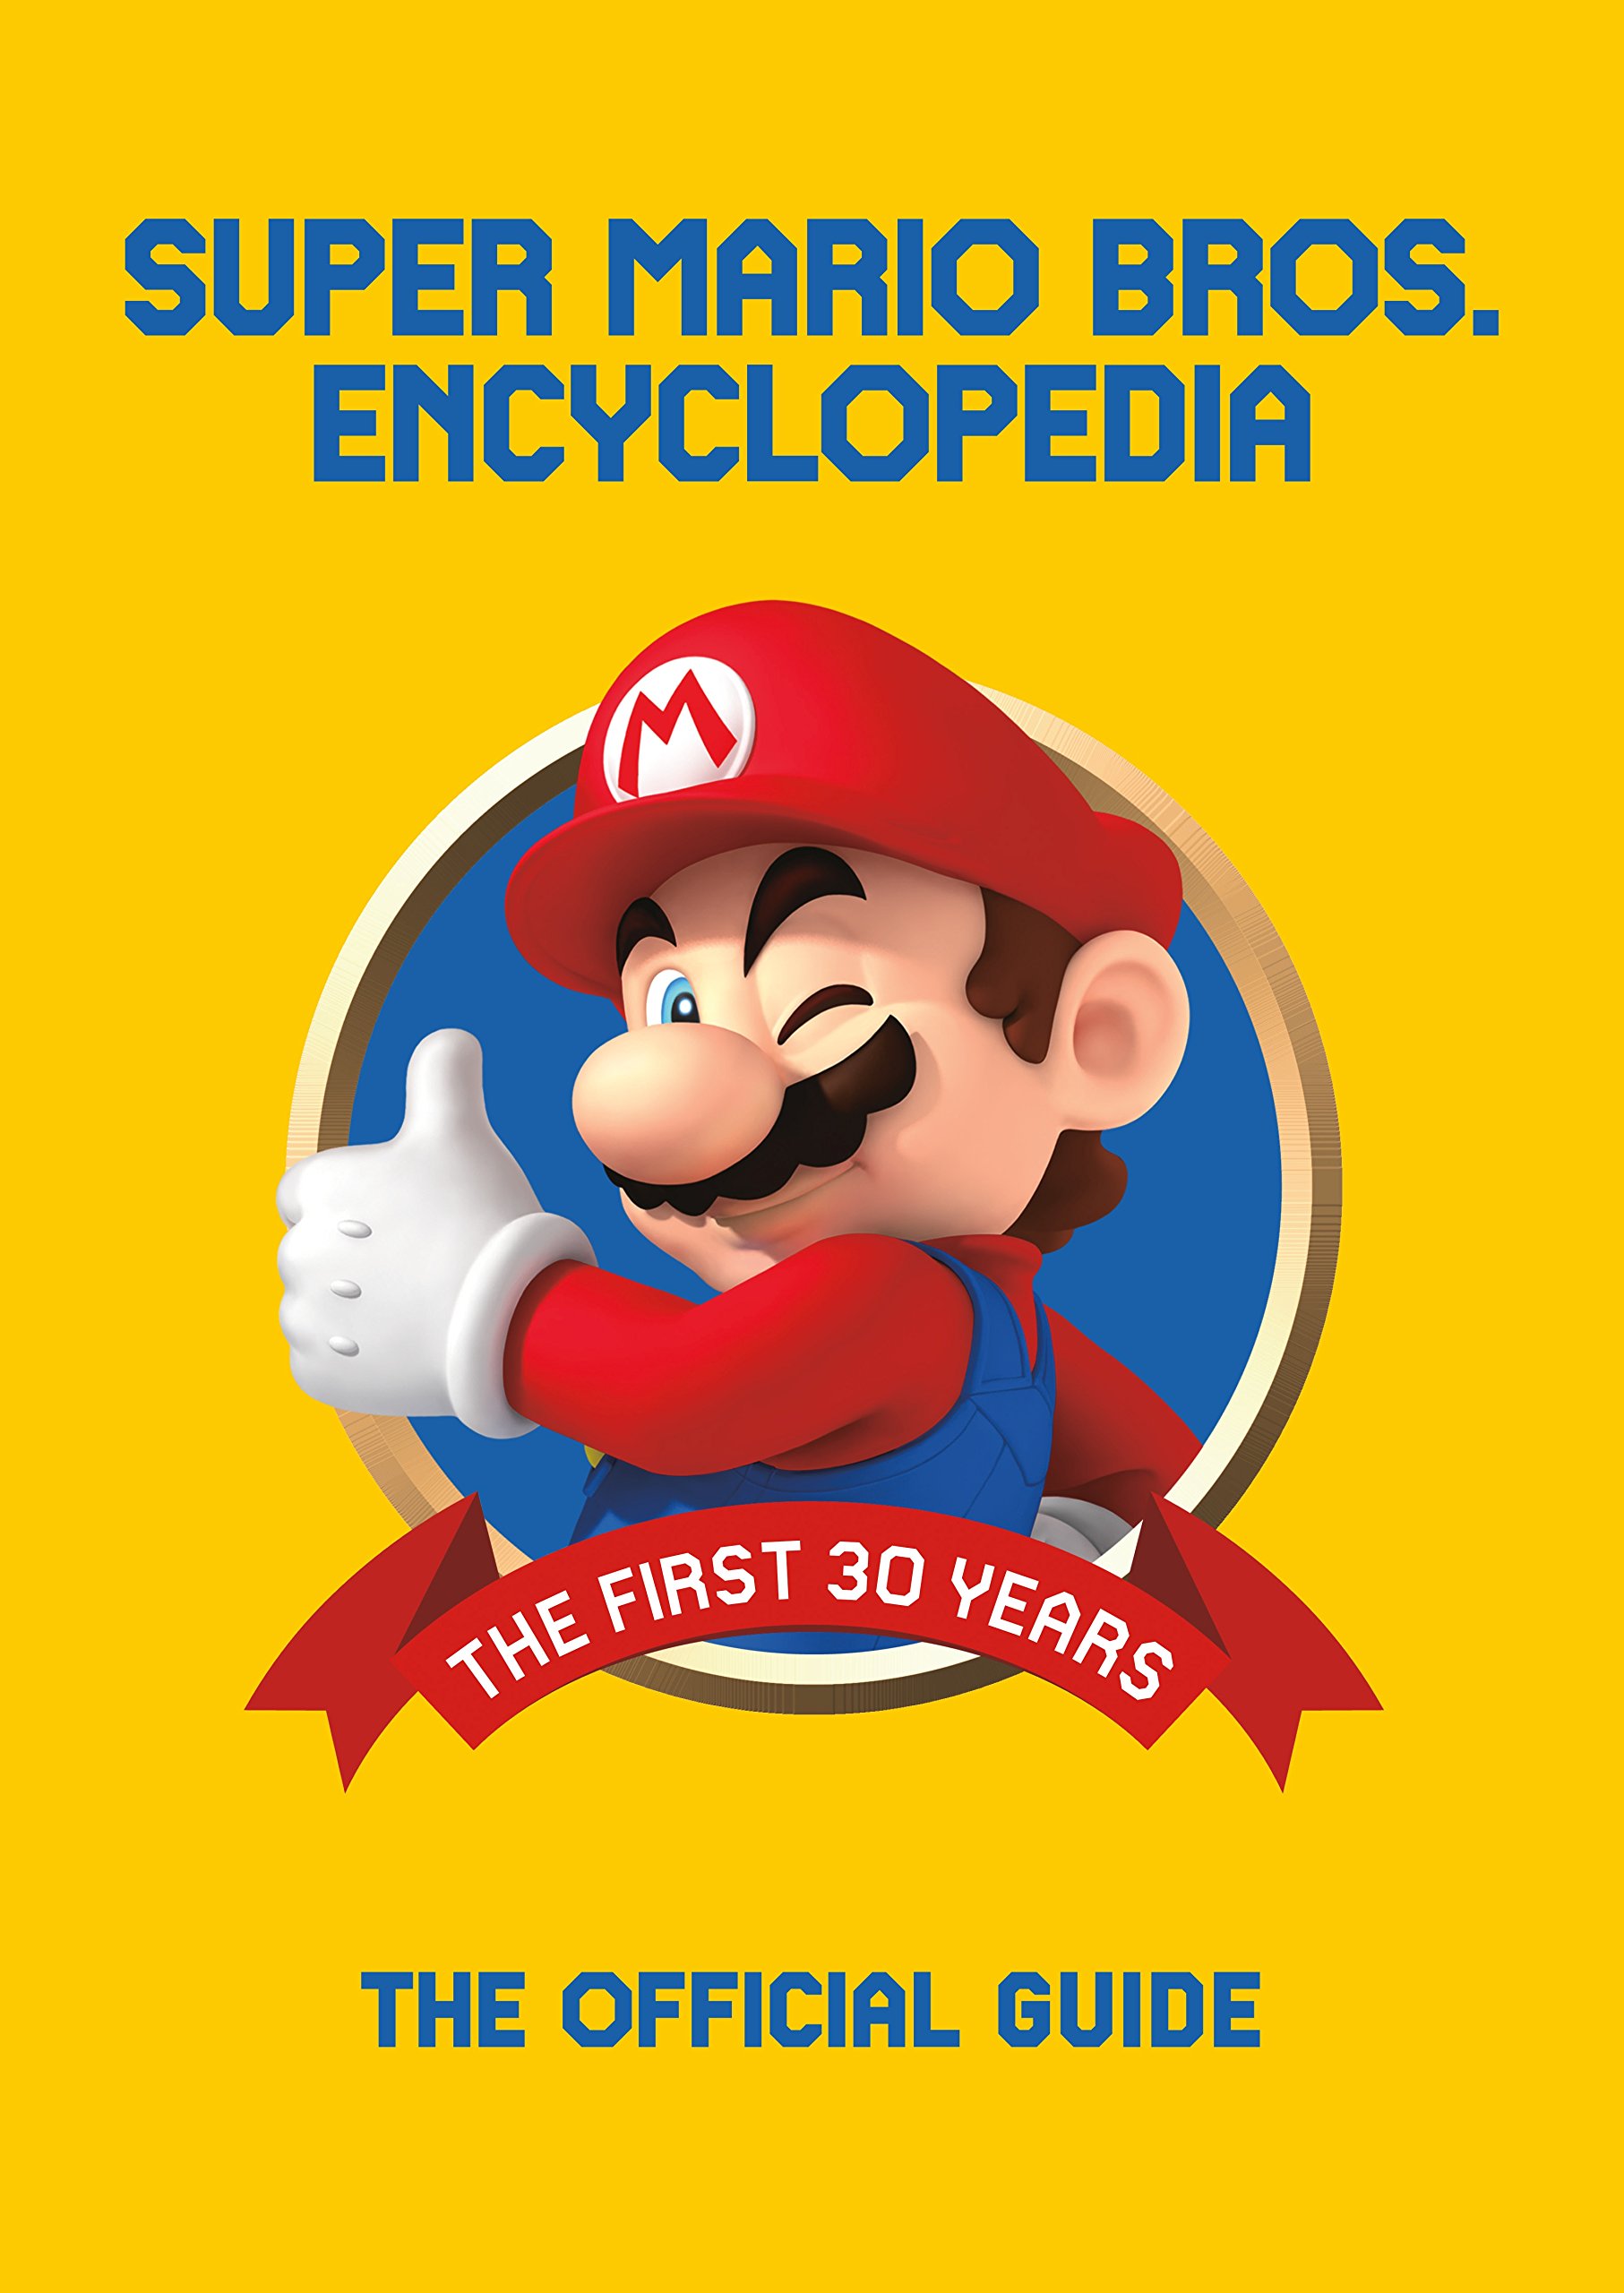 F.L.U.D.D. - Super Mario Wiki, the Mario encyclopedia